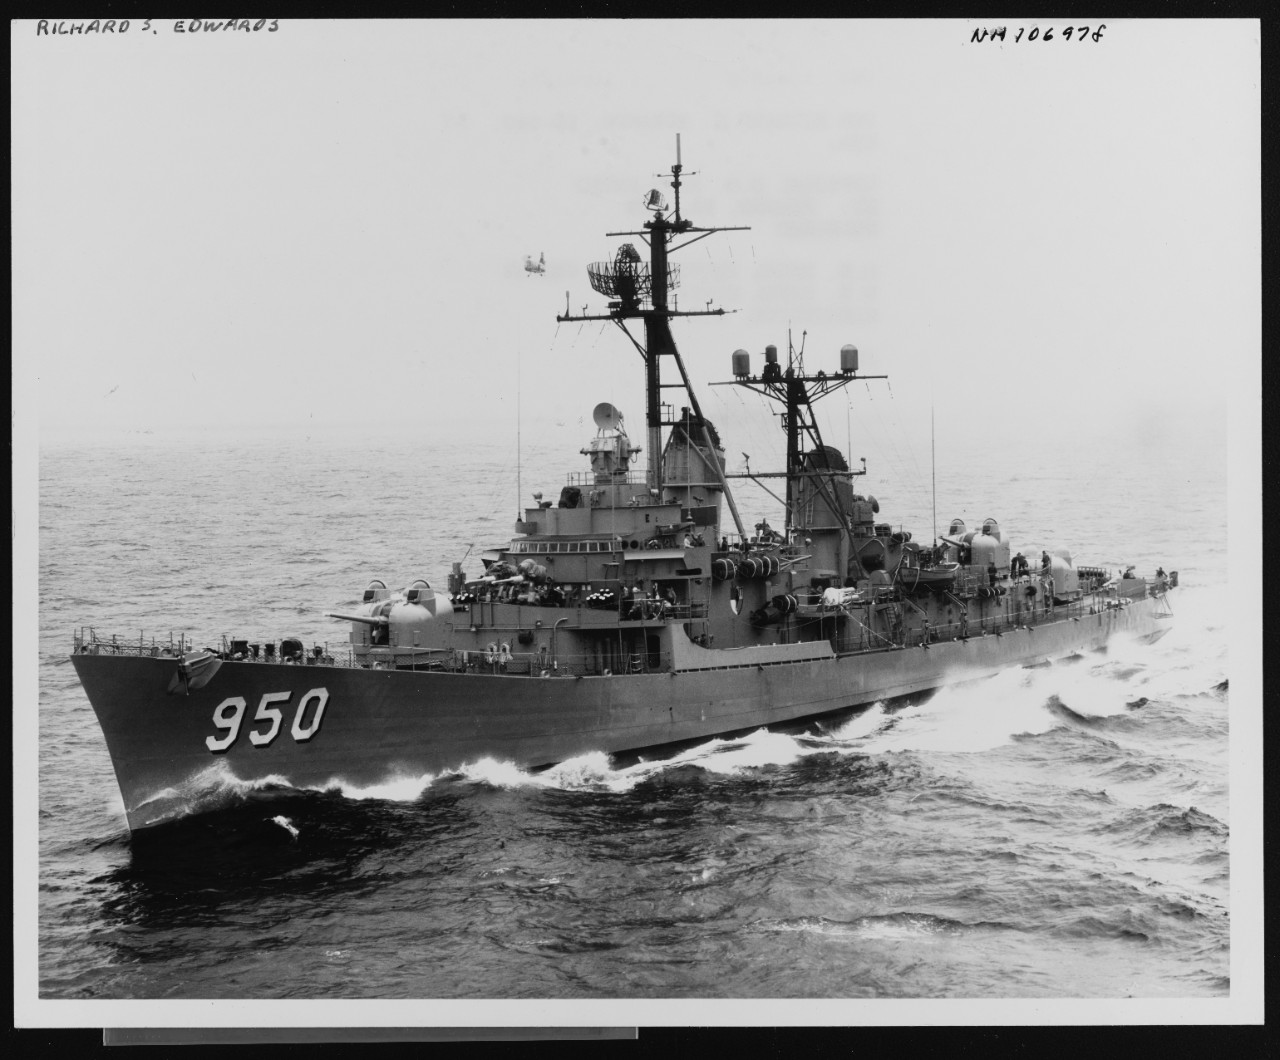 Photo # NH 106978  USS Richard S. Edwards